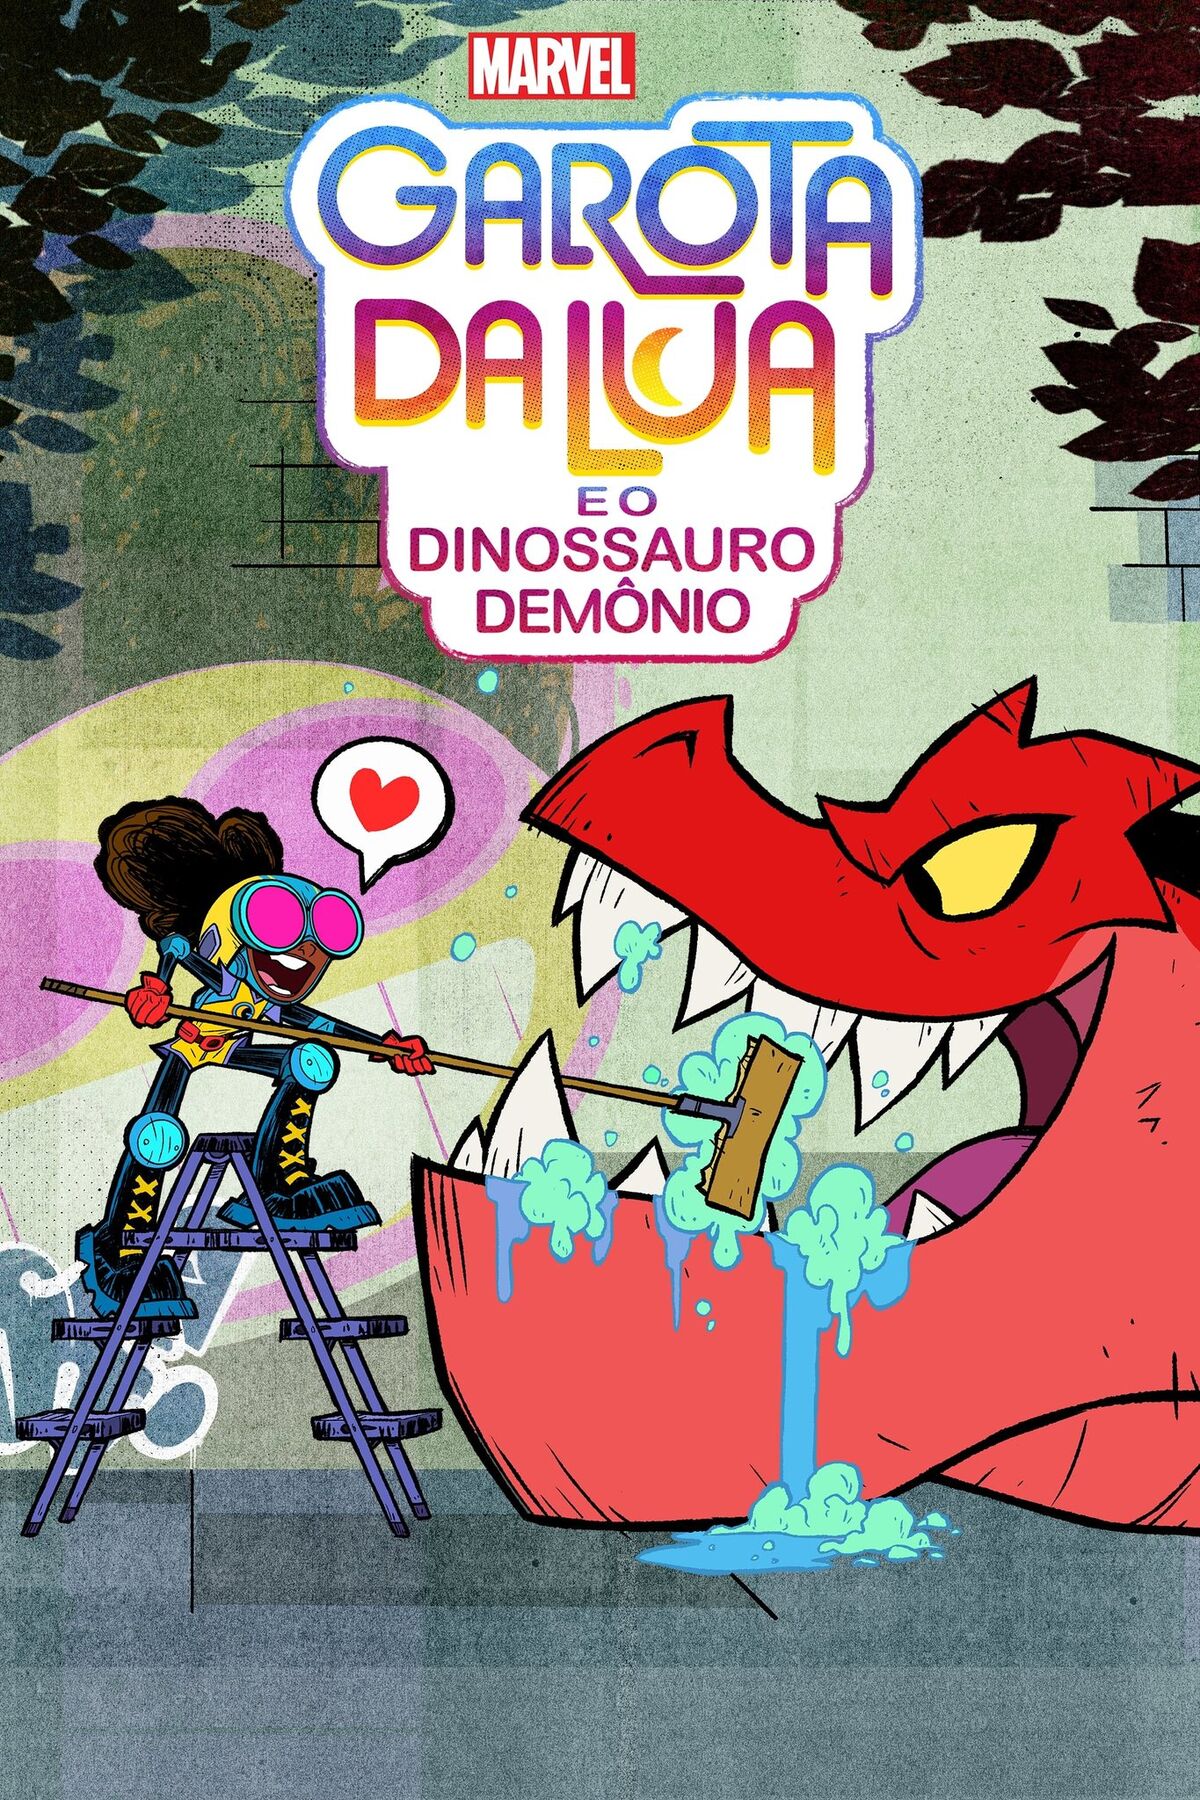 Nova Série no Disney Channel 🗣 Garota da Lua e o Dinossauro